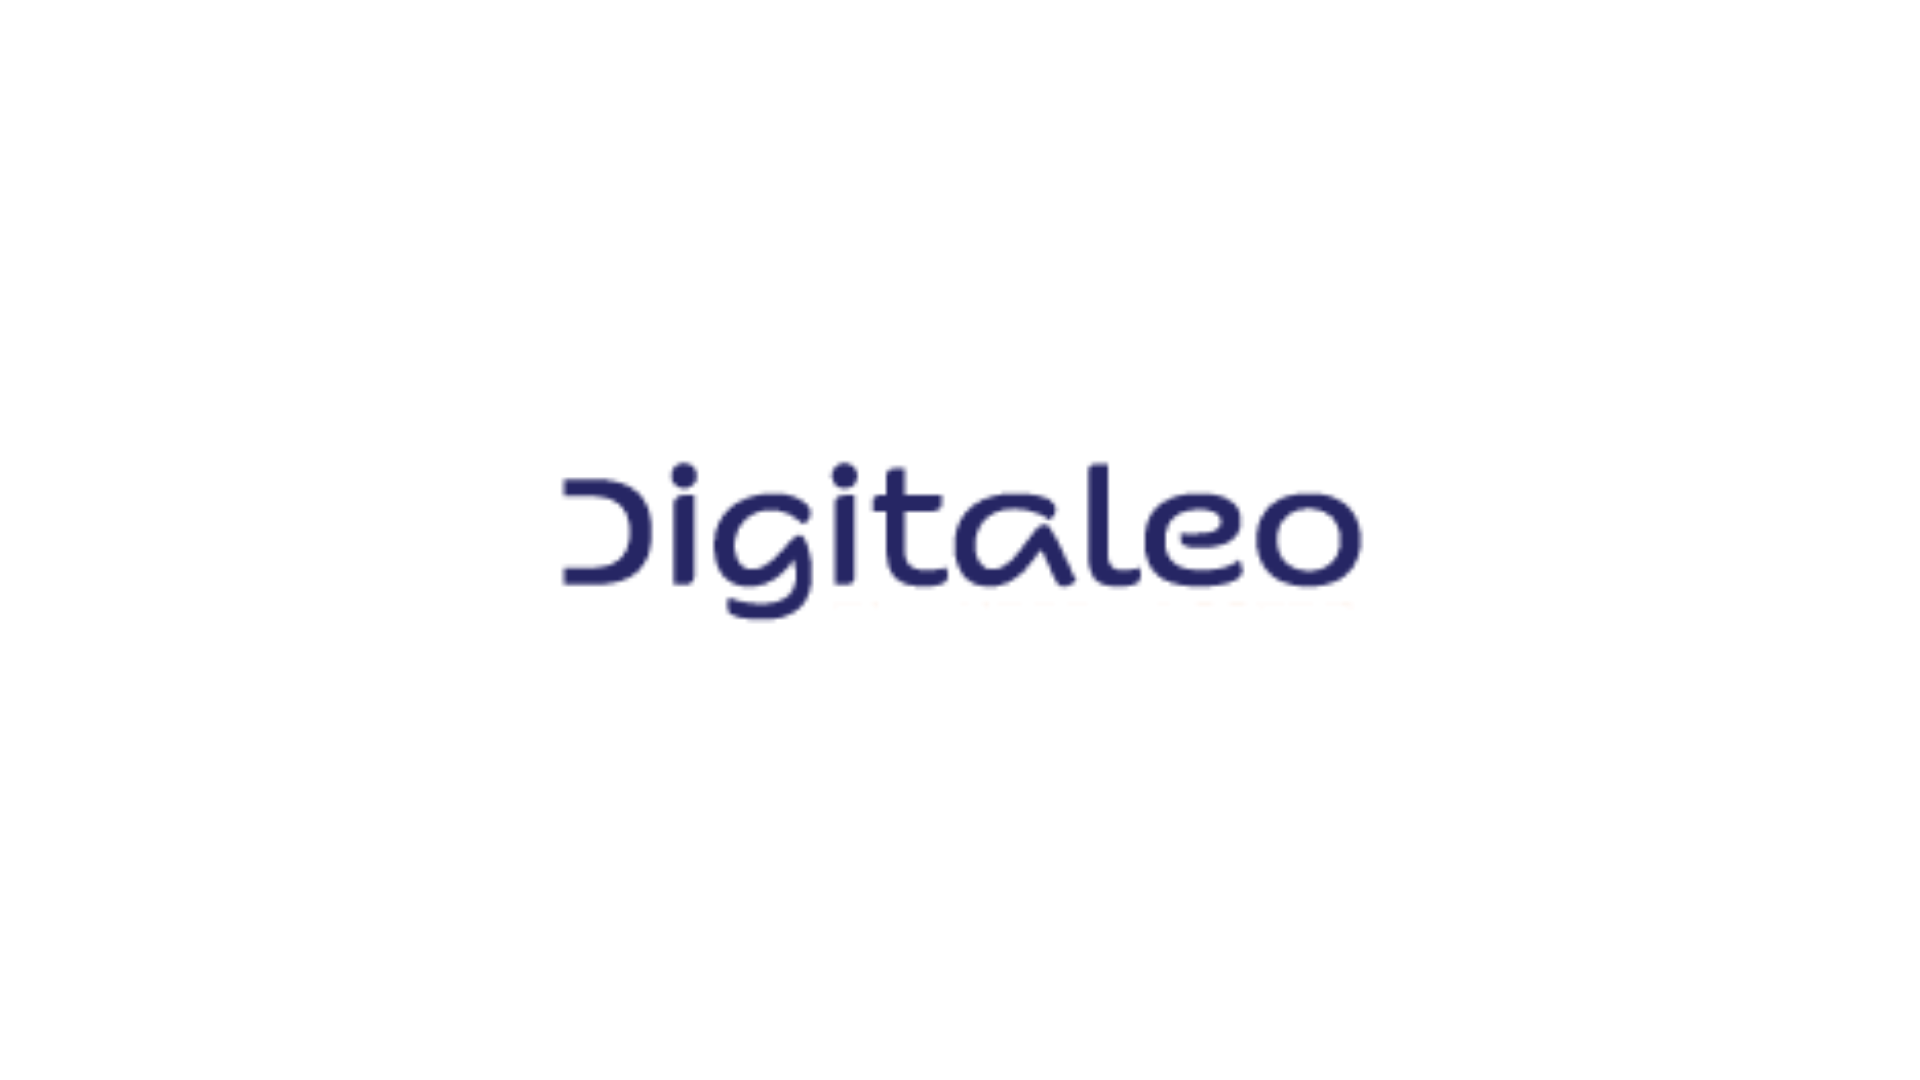 digitaleo_logo - label nr